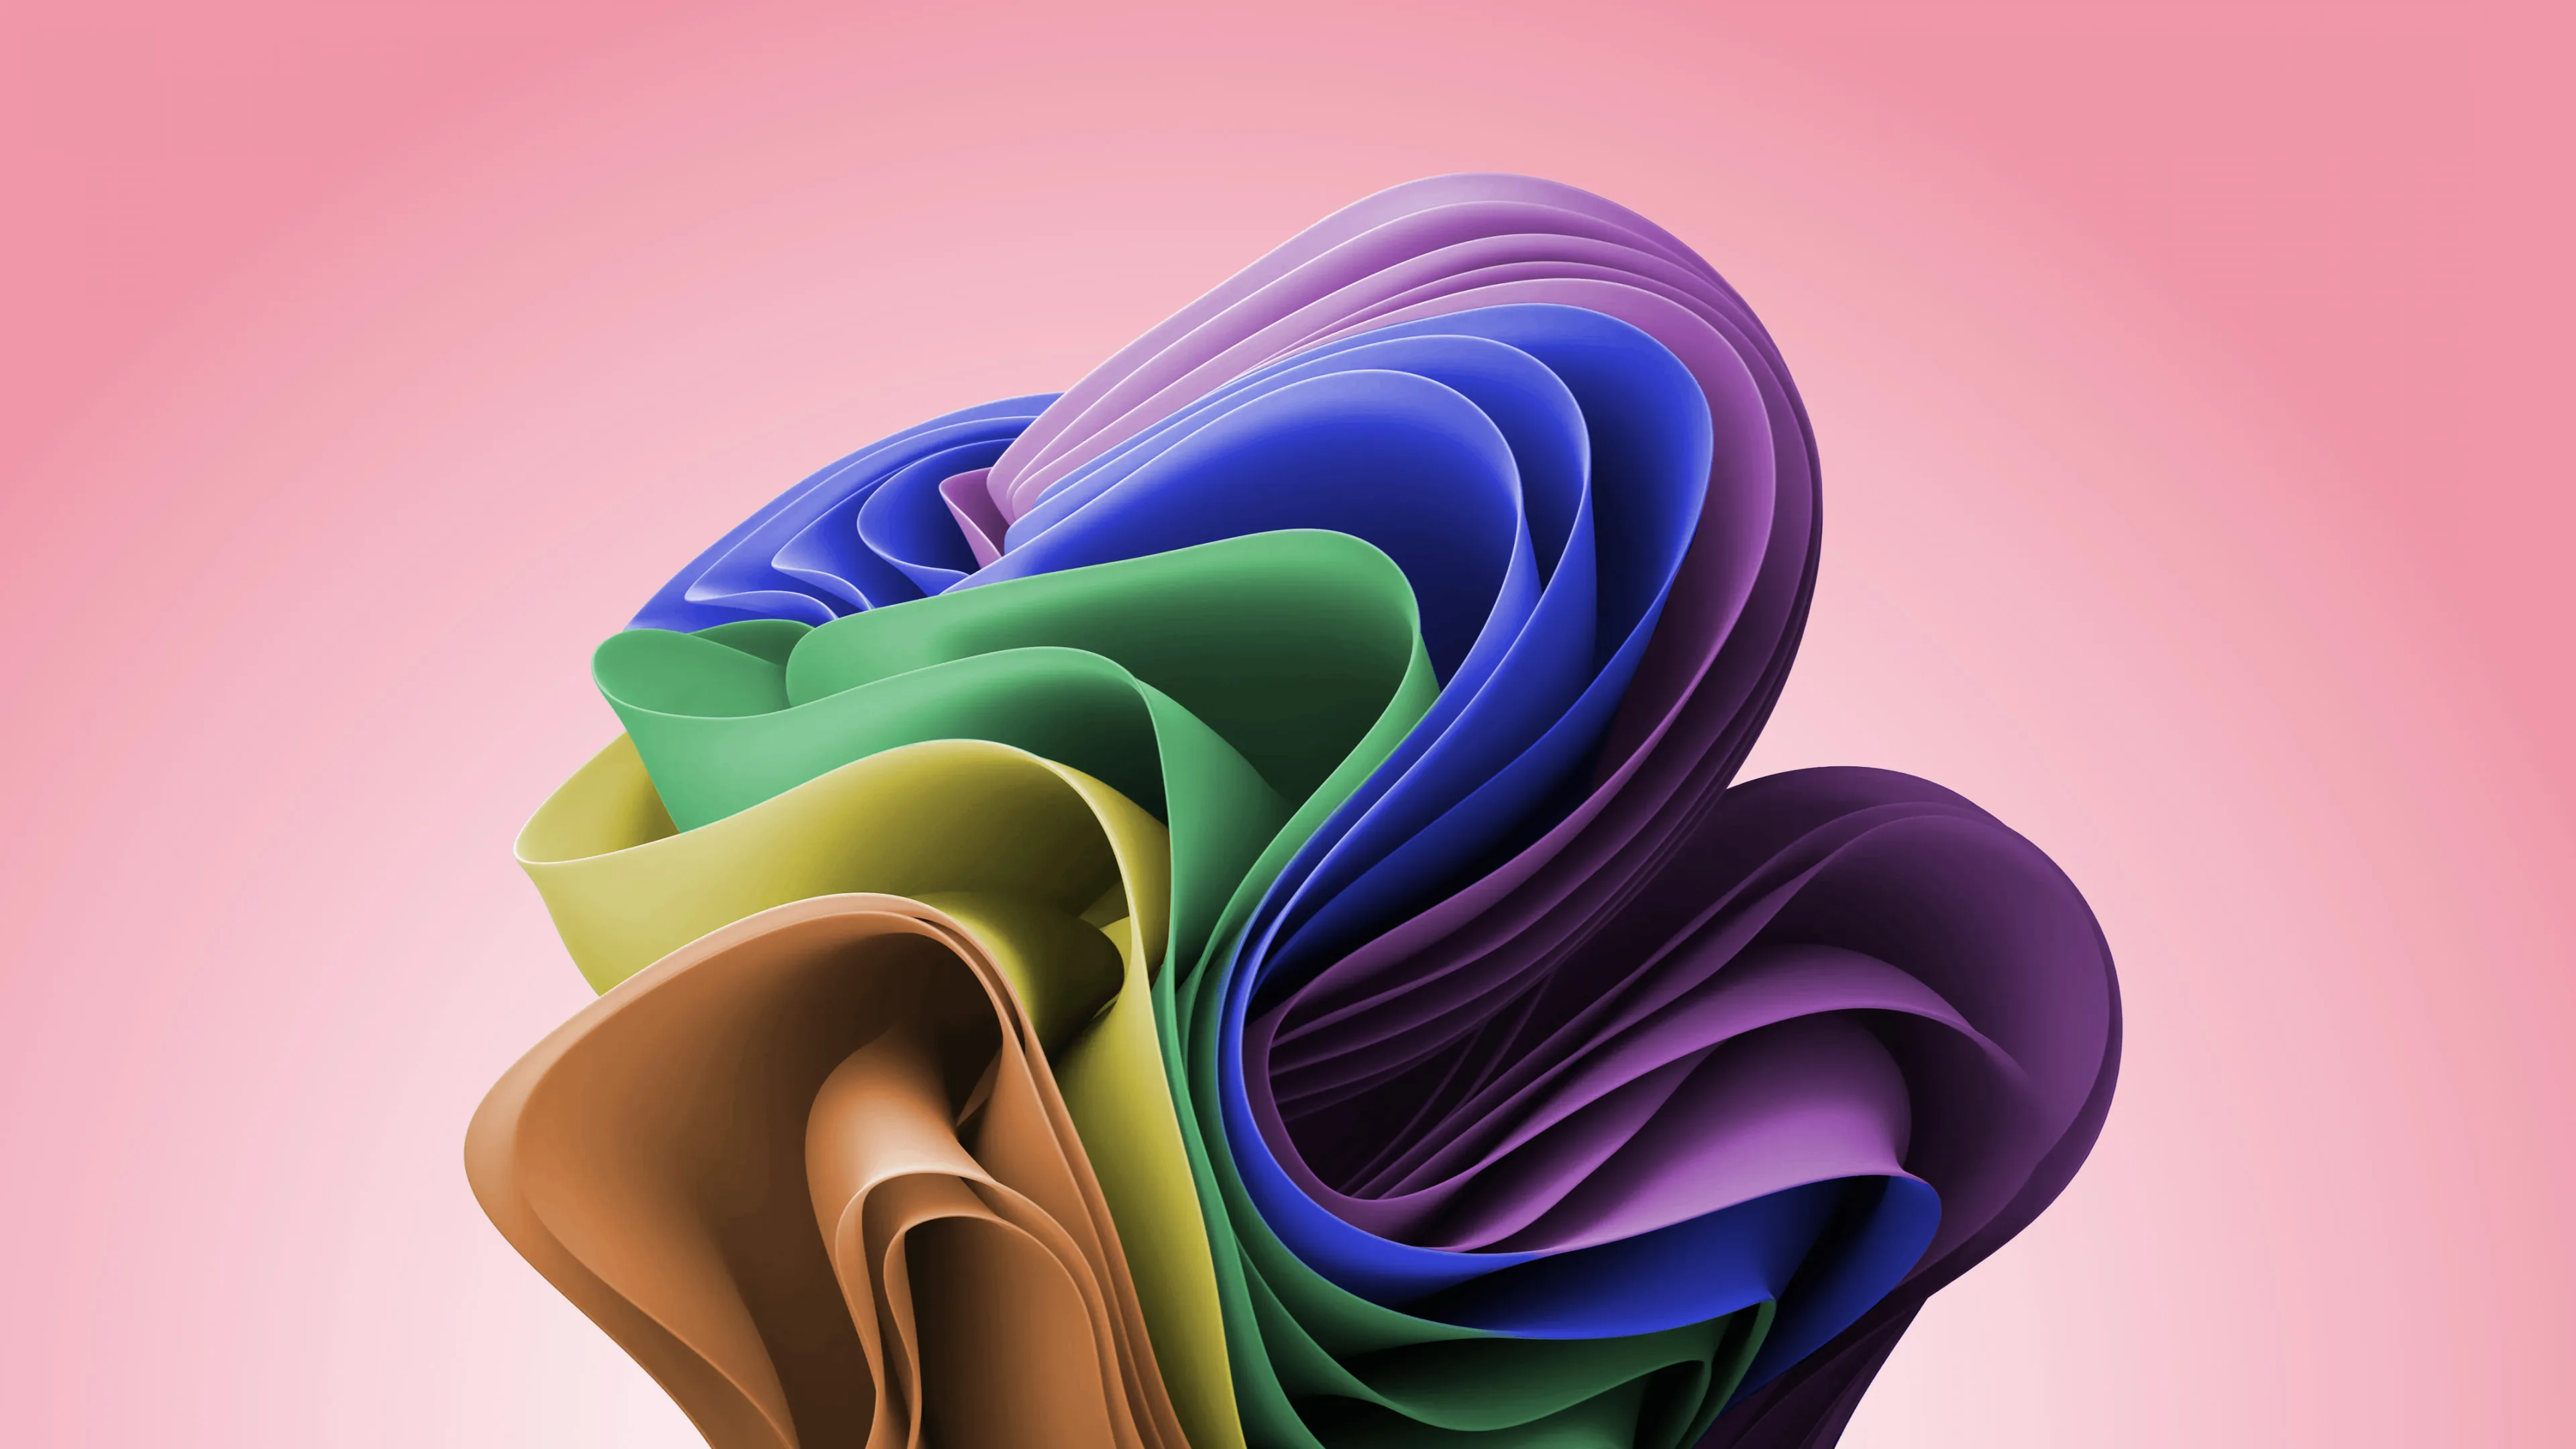 23+] Colourful 4K Wallpapers - WallpaperSafari